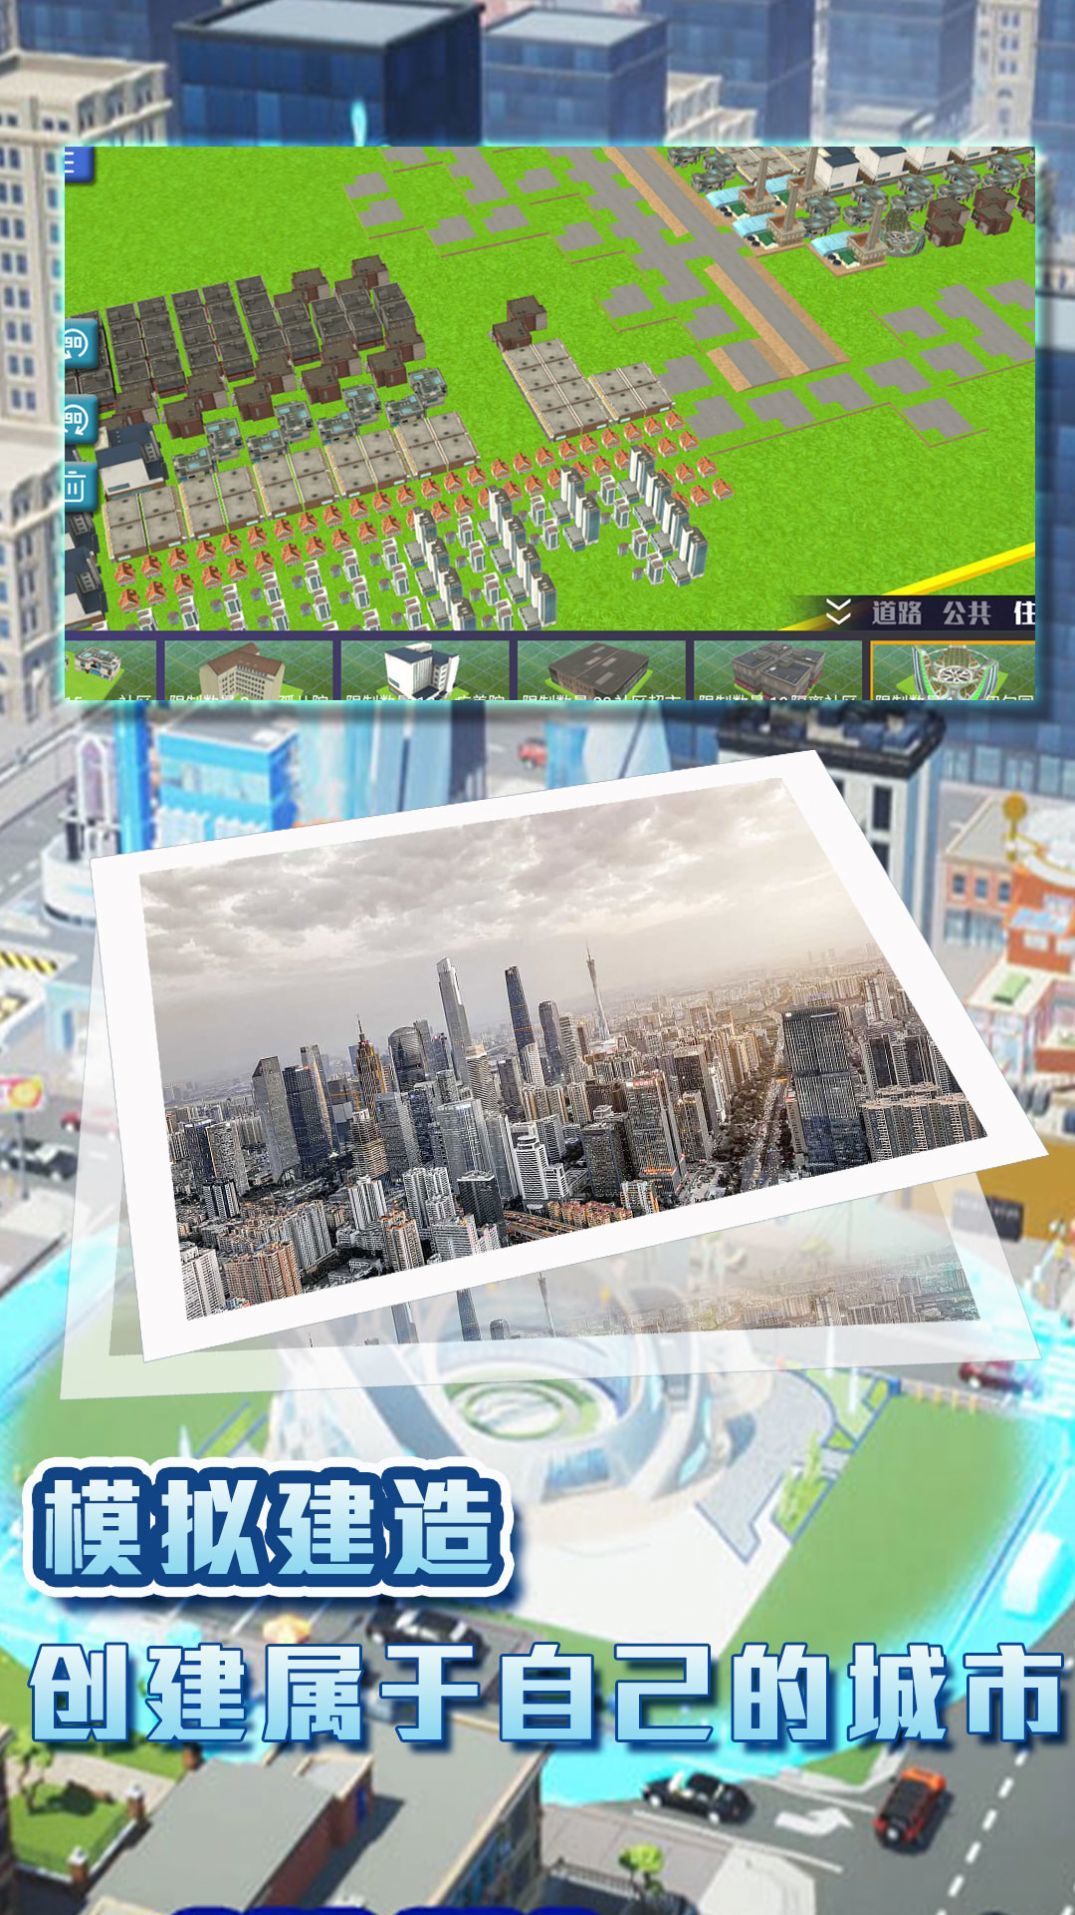 城镇梦想家的挑战游戏图2